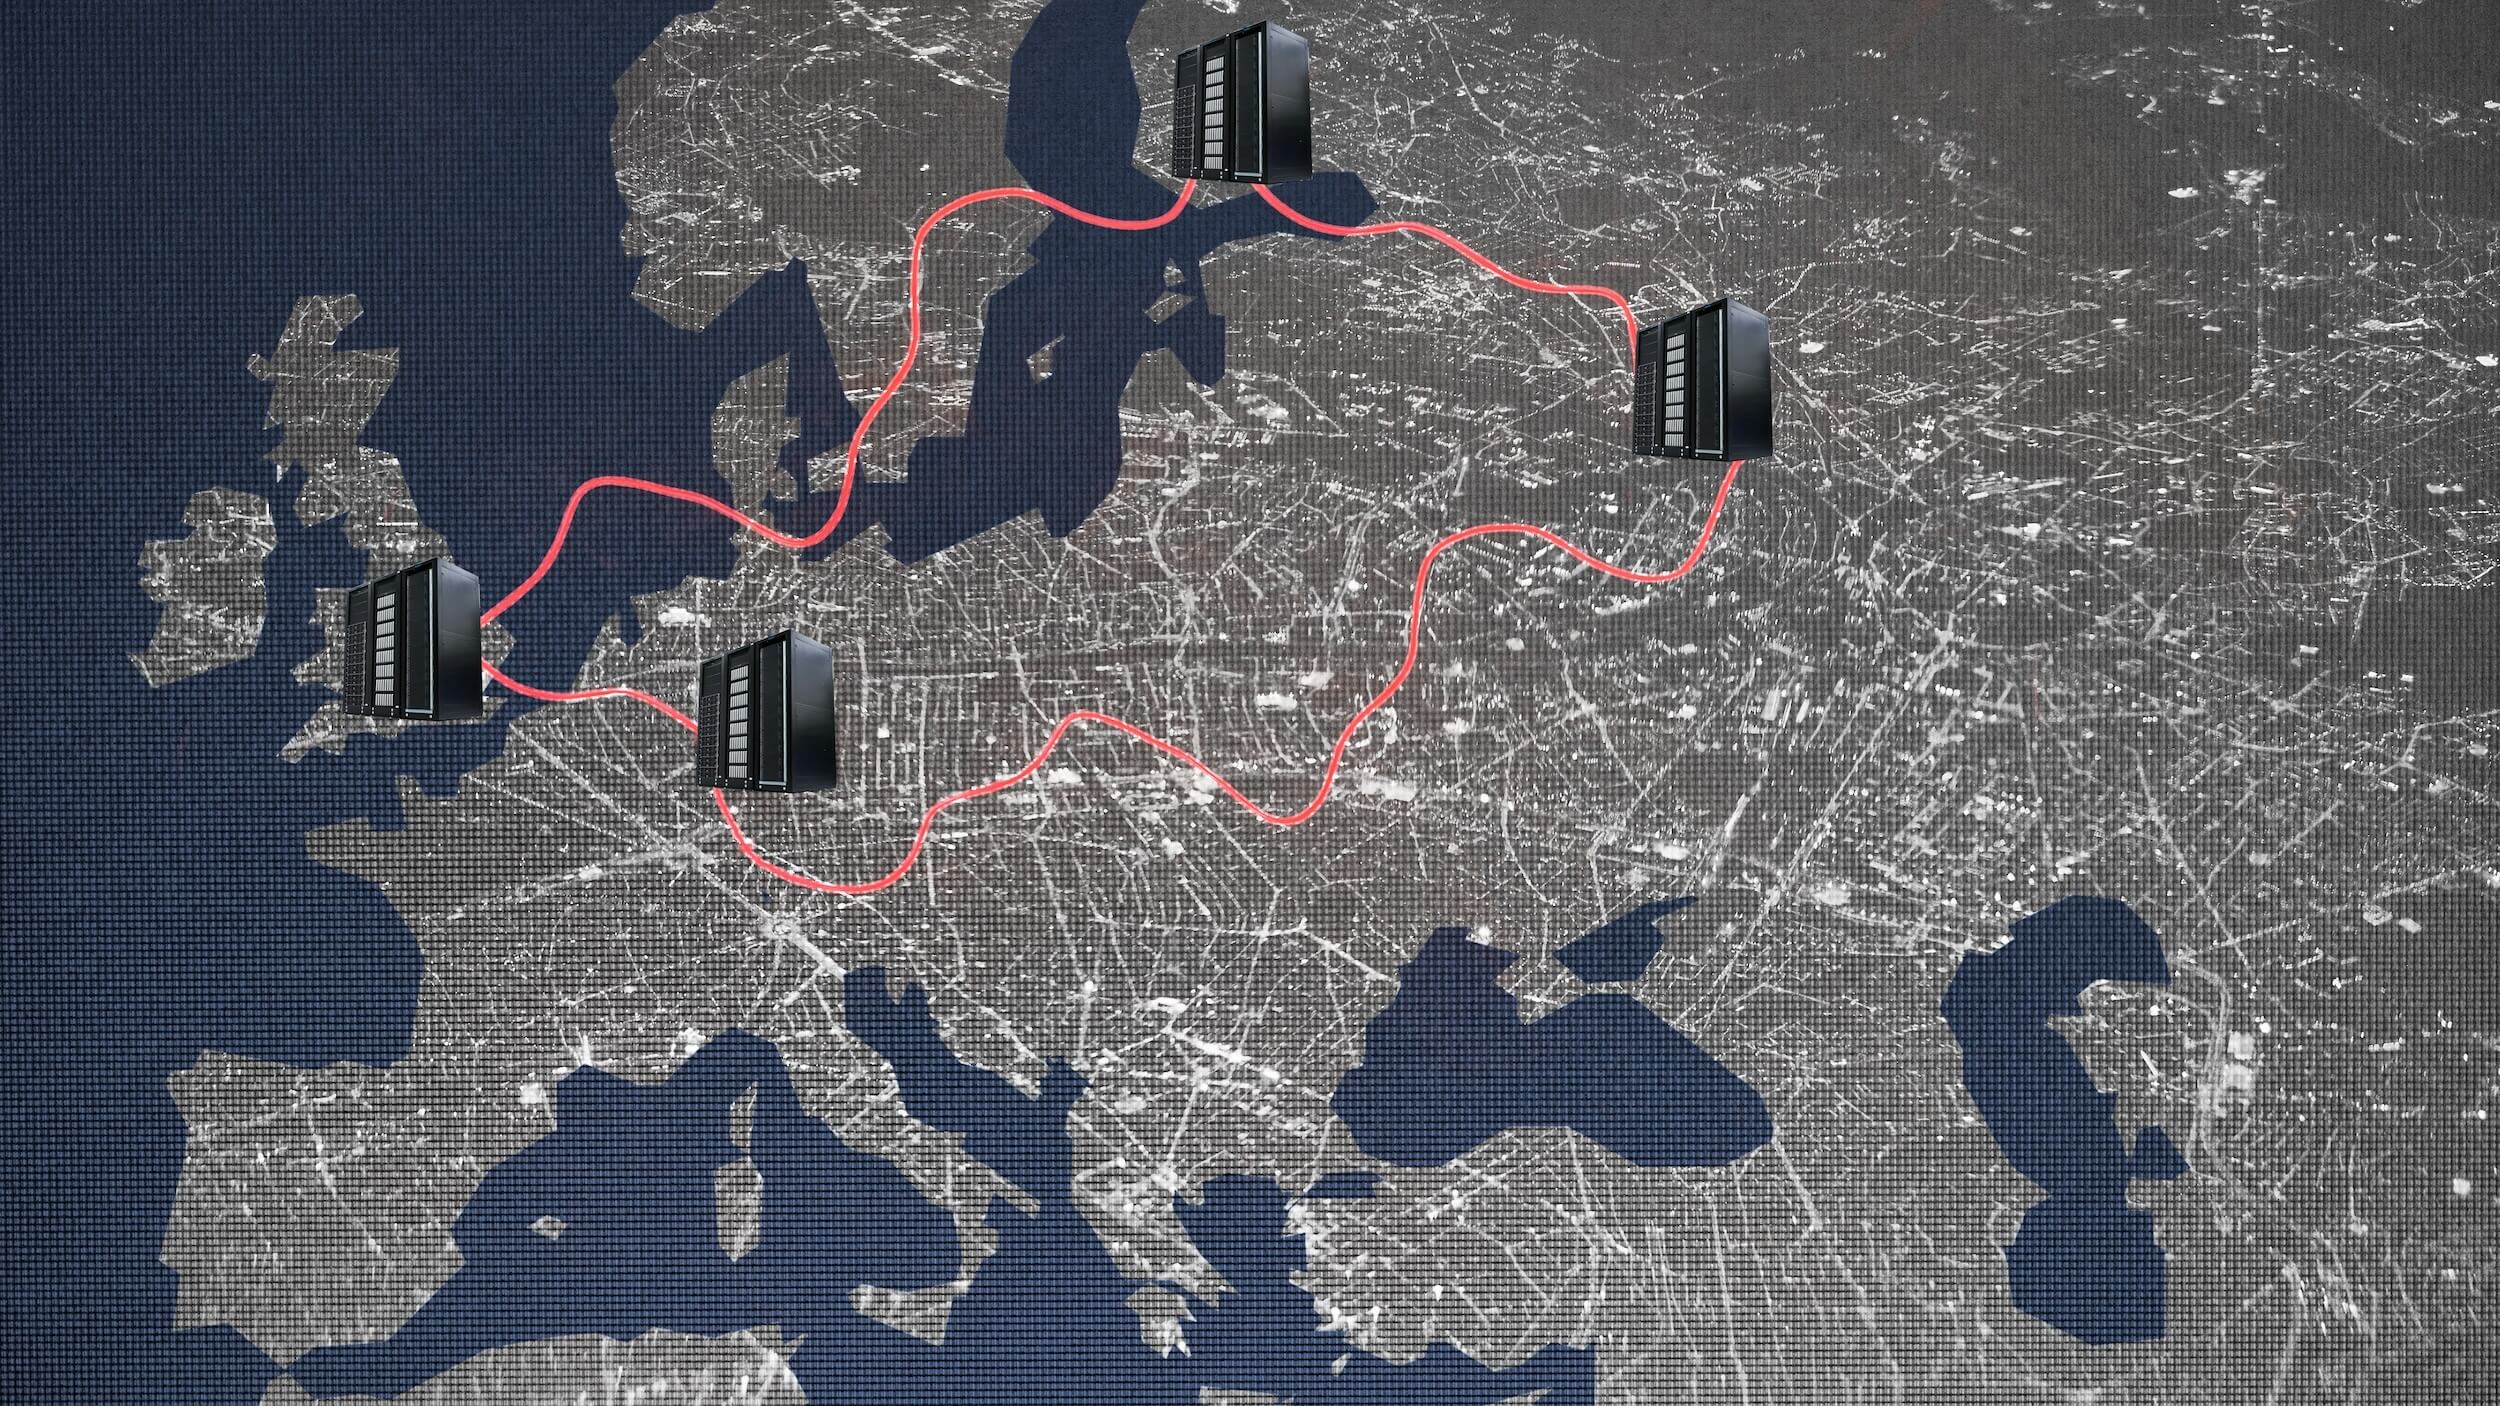 Europakarte mit einer roten Linie, die von Moskau nach London, nach Helsinki, nach Frankfurt und wieder zurück nach Moskau führt. In den genannten Städten stehen Servertürme – es ist die Infrastruktur der russischen Kampagne Doppelgänger